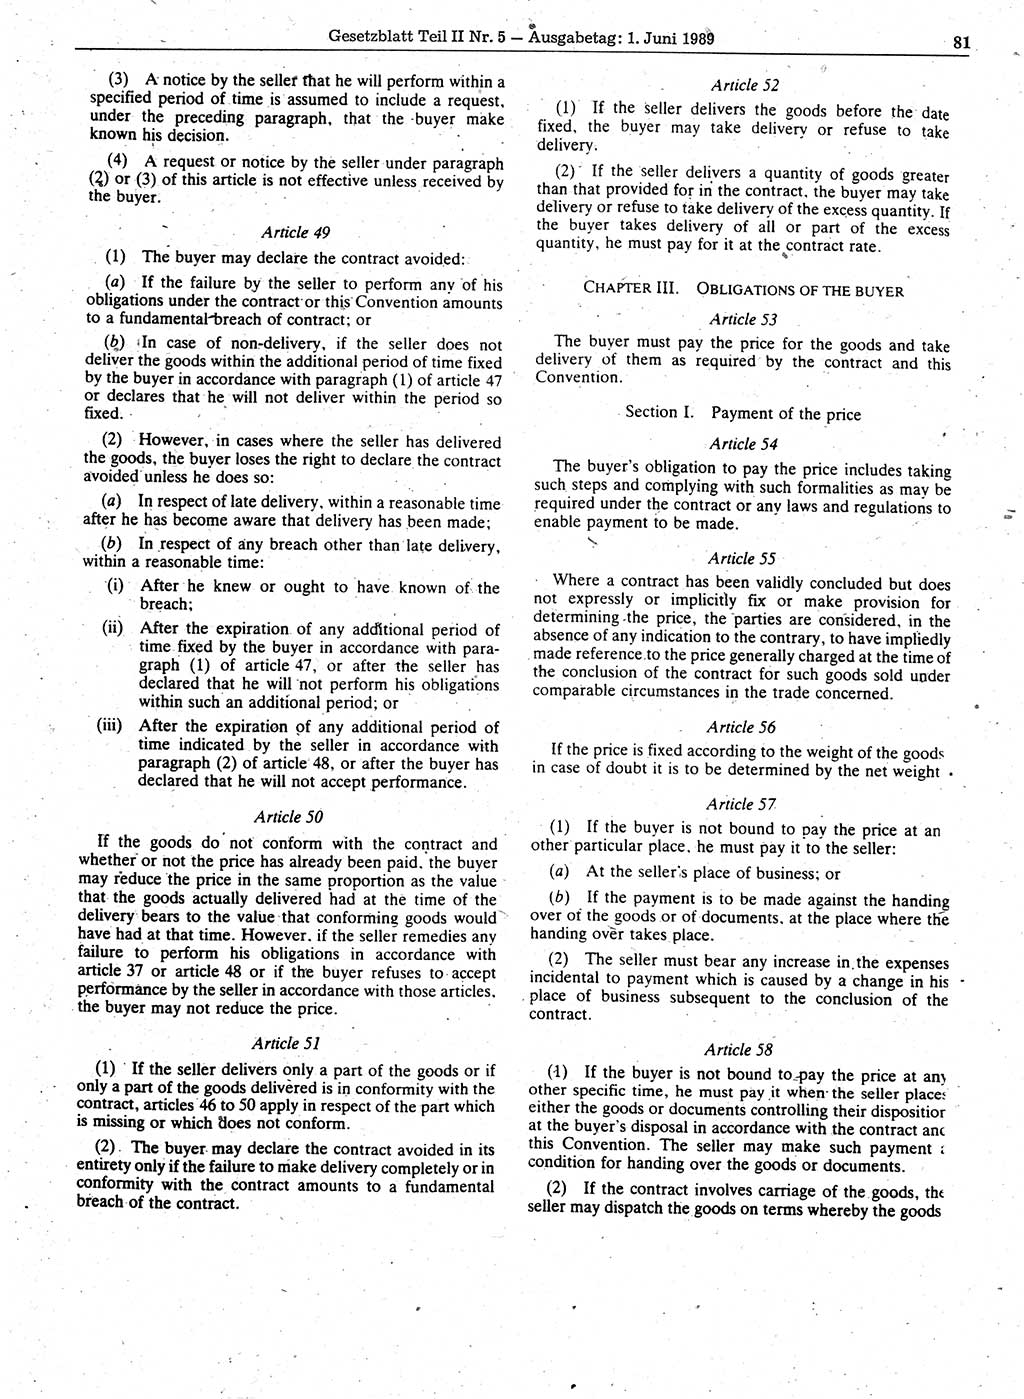 Gesetzblatt (GBl.) der Deutschen Demokratischen Republik (DDR) Teil ⅠⅠ 1989, Seite 81 (GBl. DDR ⅠⅠ 1989, S. 81)